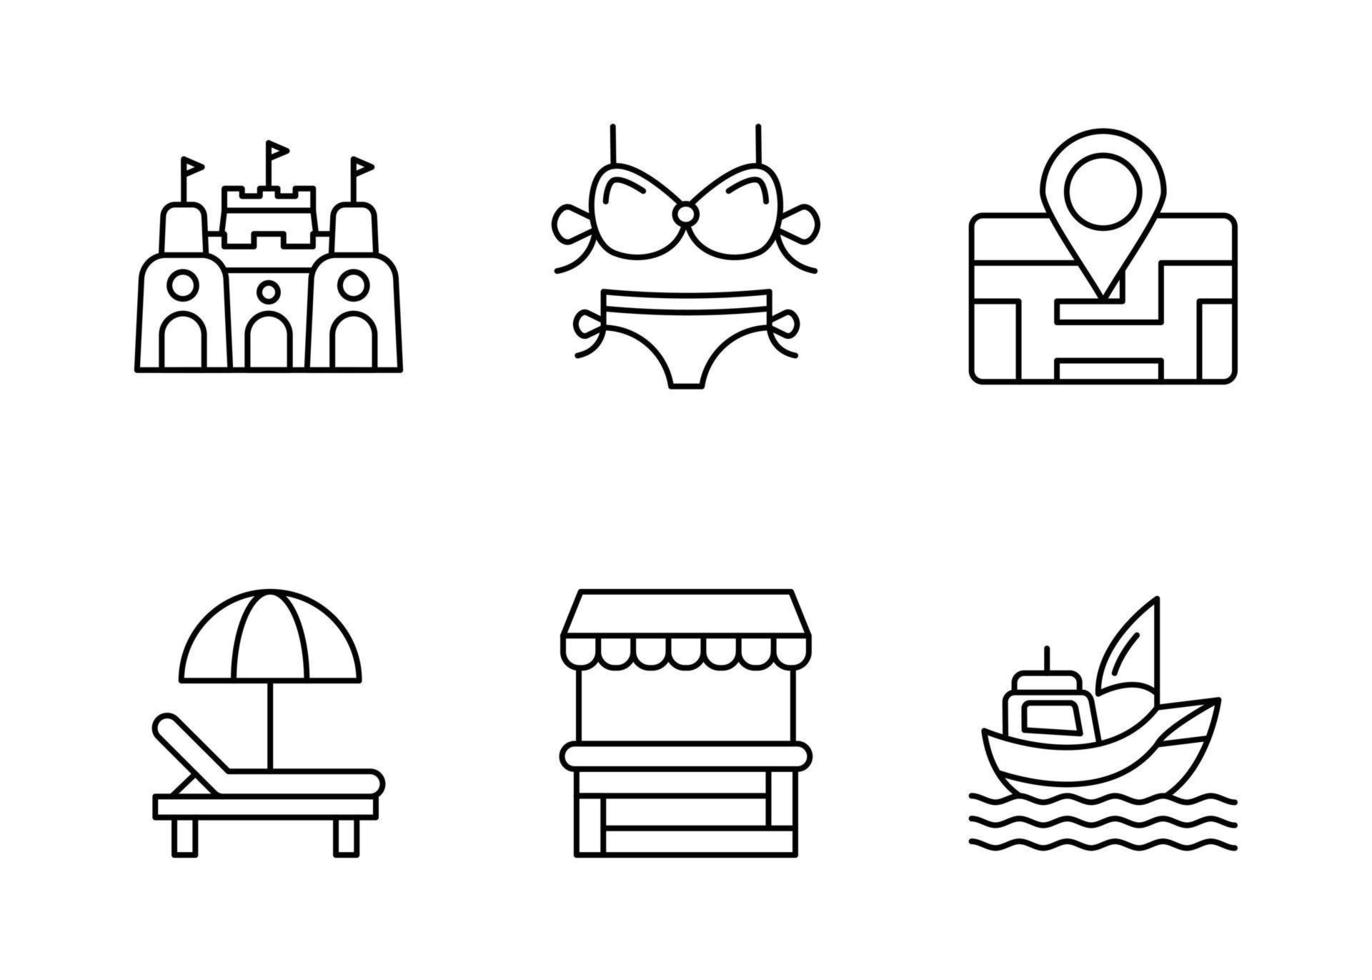 conjunto de ícones vetoriais do parque aquático vetor